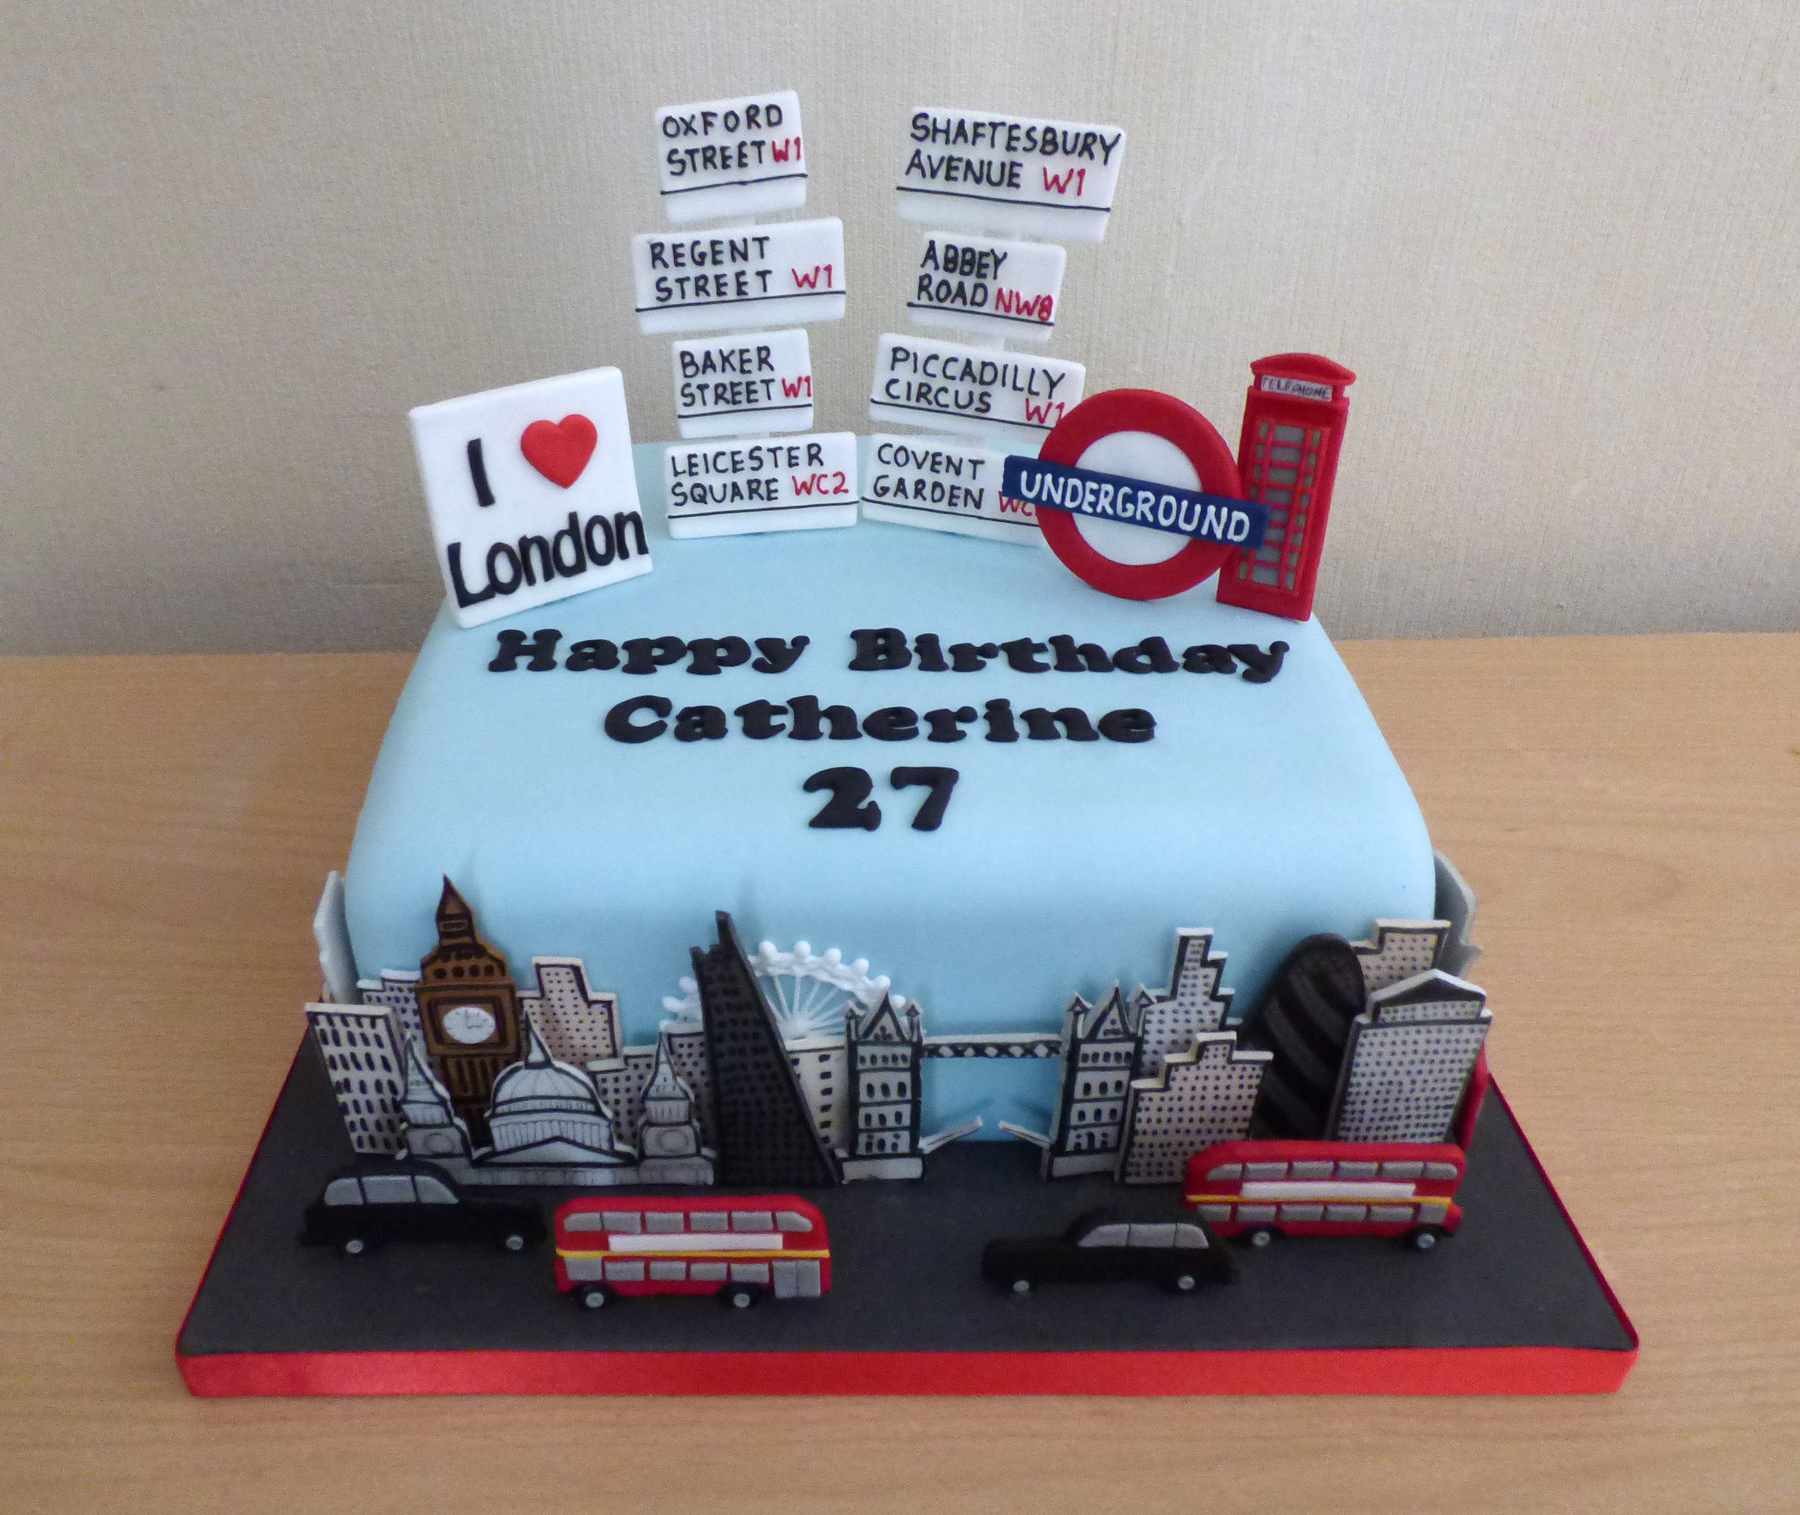 Bon Voyage Travel Theme Cake | India To London Journey Cake | Safe Journey  Cake Decorating Ideas - YouTube